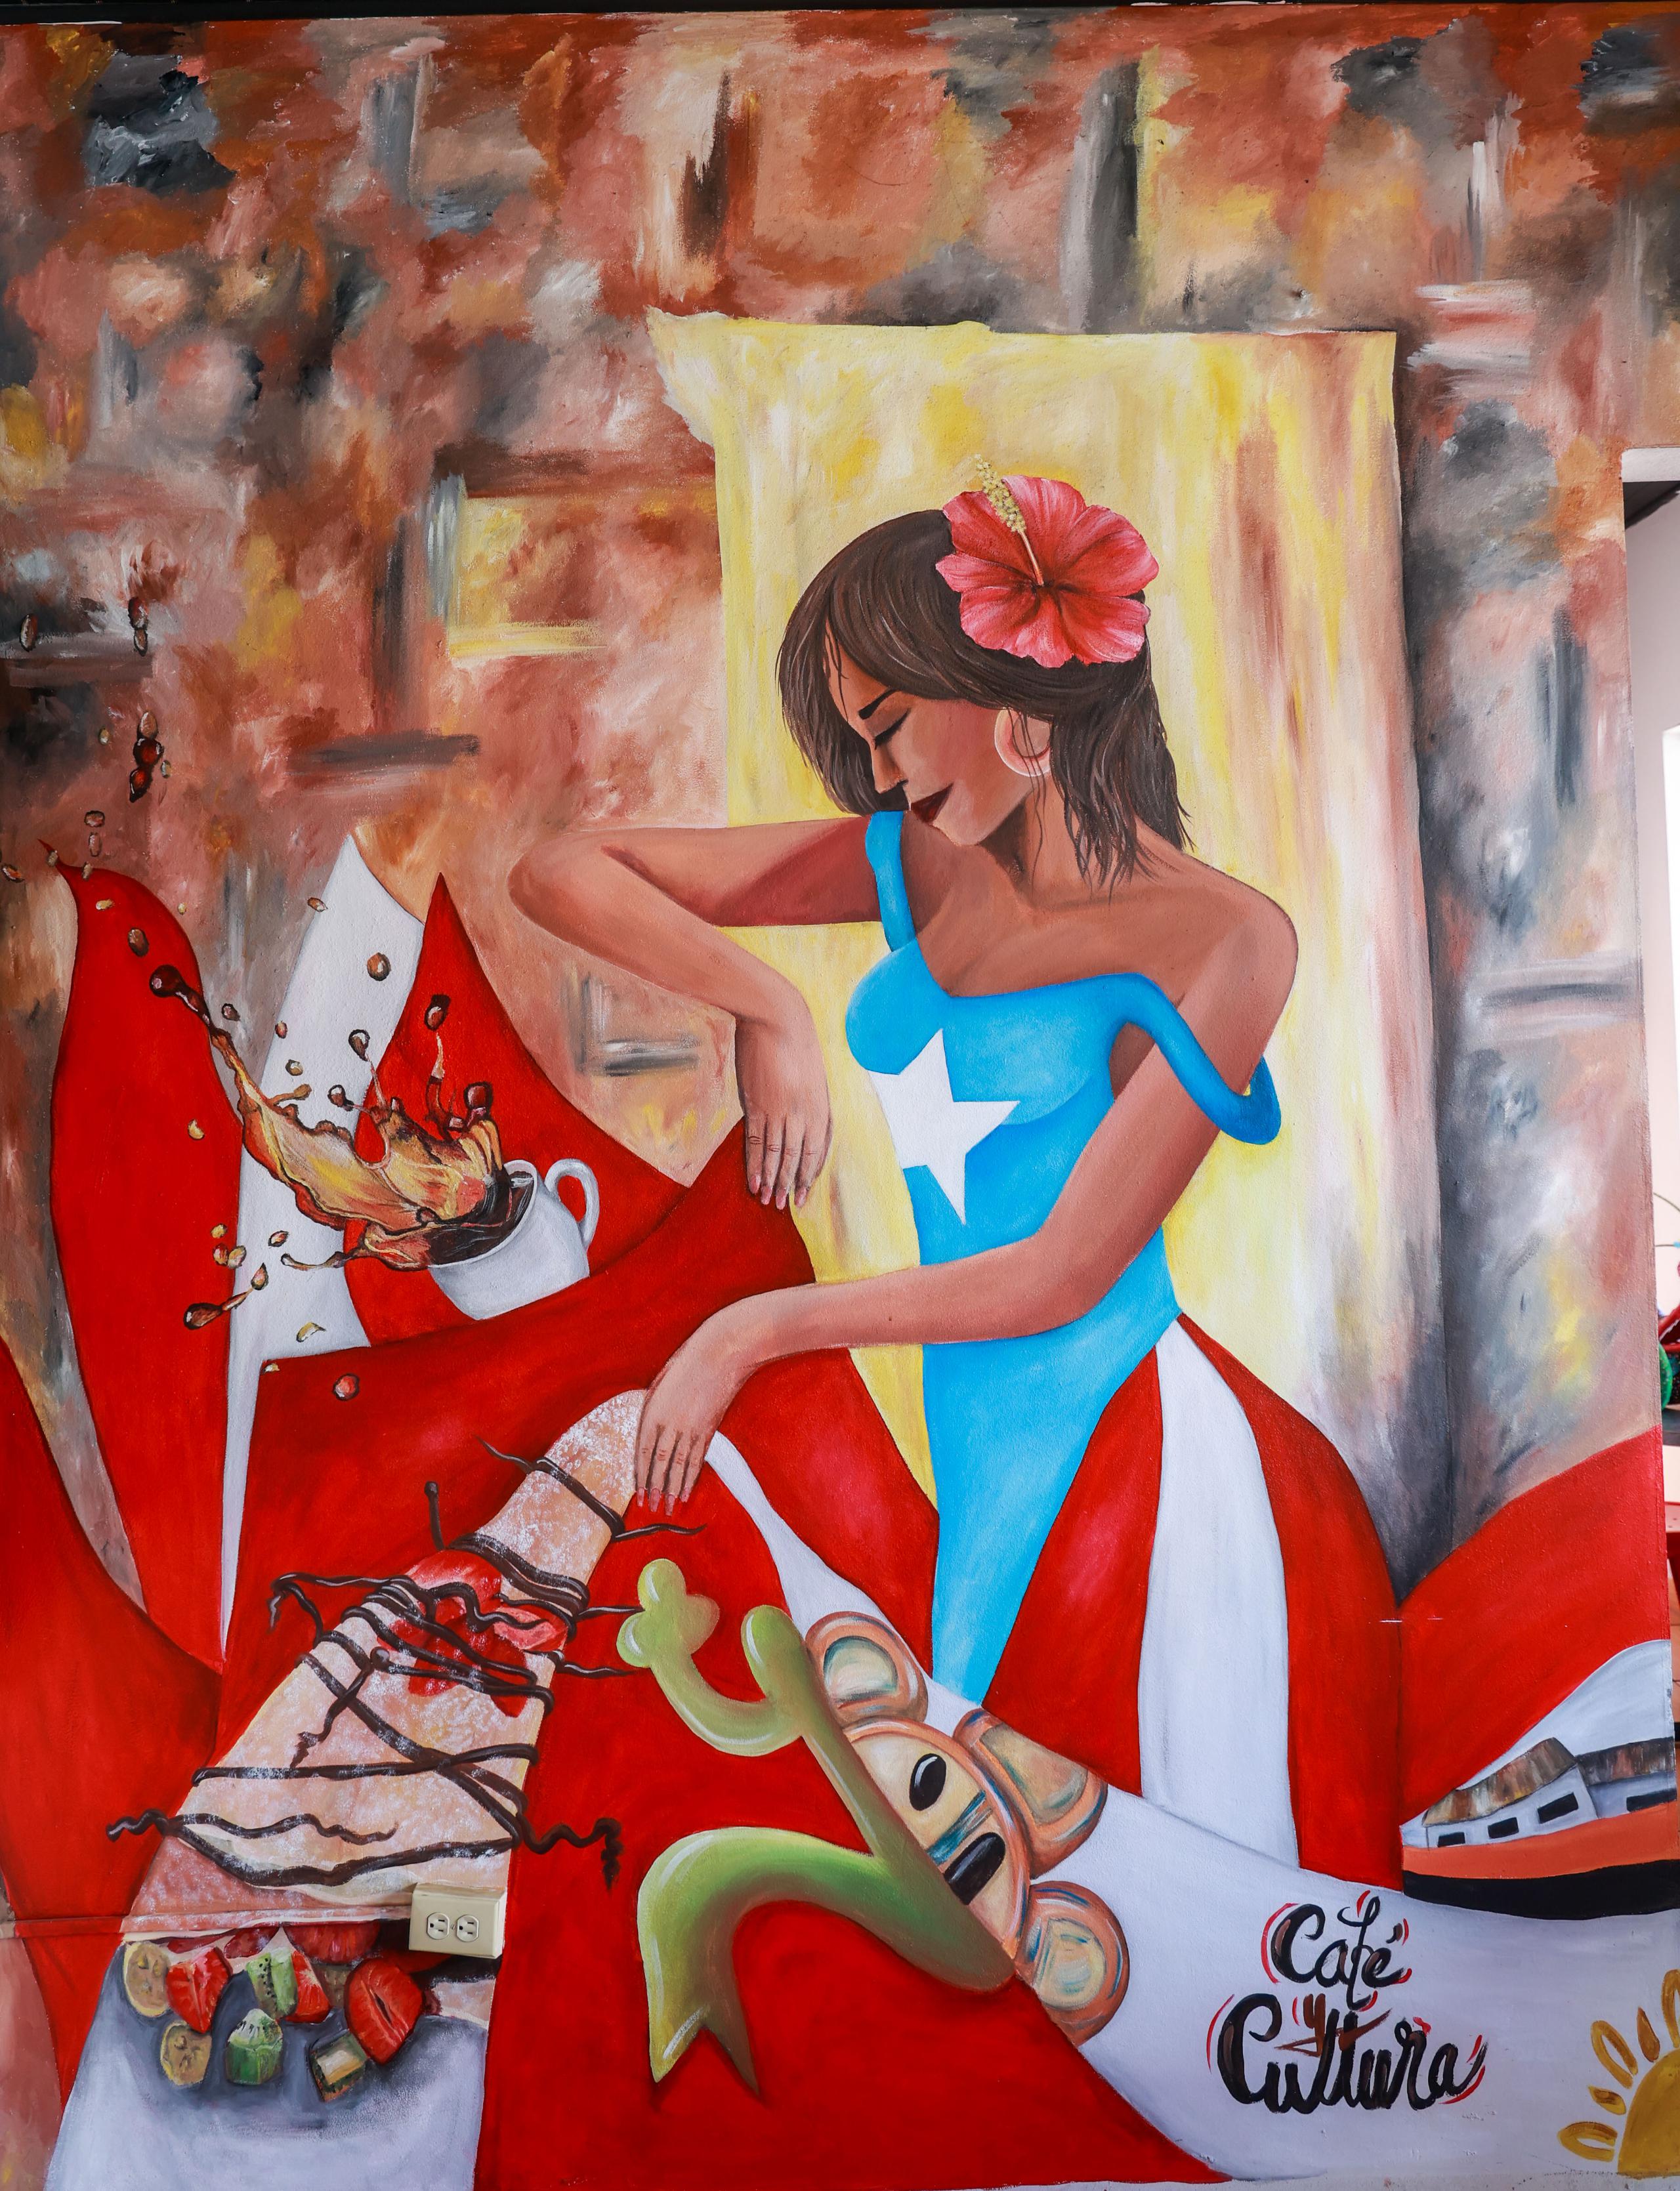 Una de las obras de la artista, quien gusta pintar estampas puertorriqueñas.